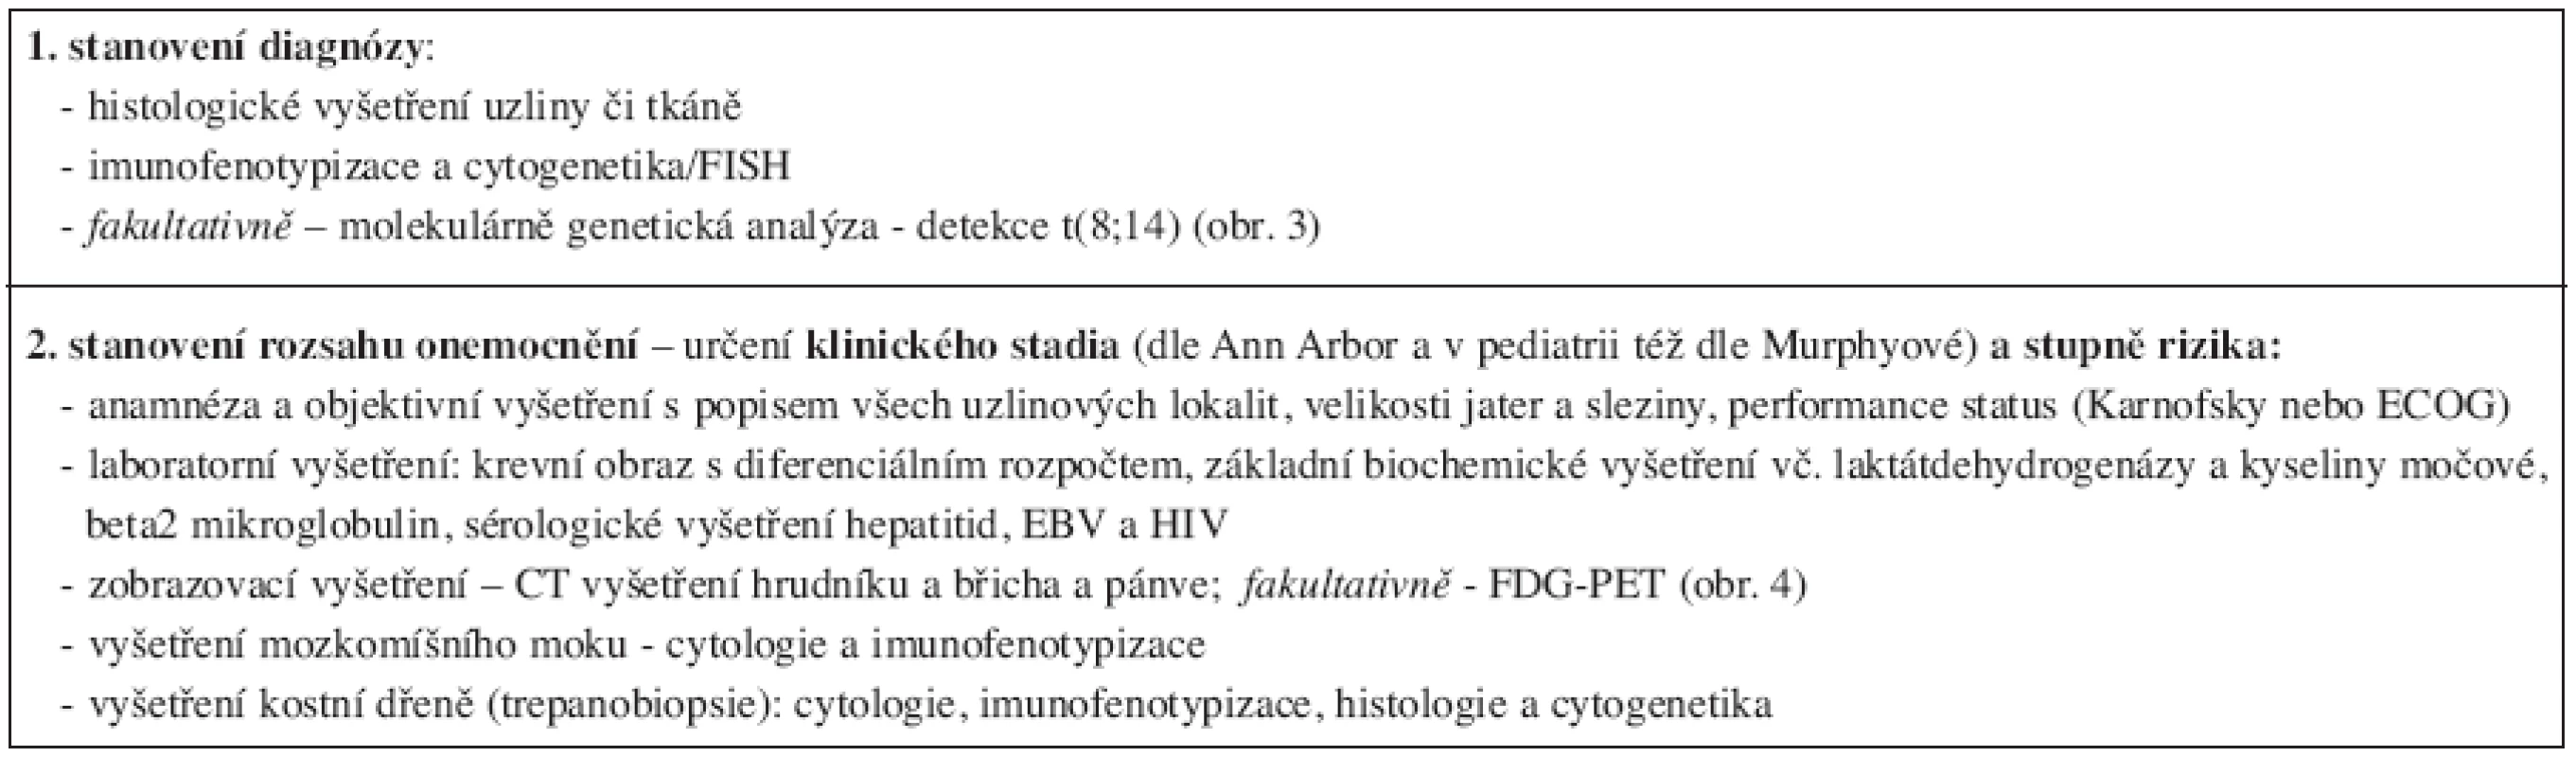 Diagnostická doporučení pro Burkittův lymfom podle National Comprehensive Cancer Network (verze 1.2007) (21).